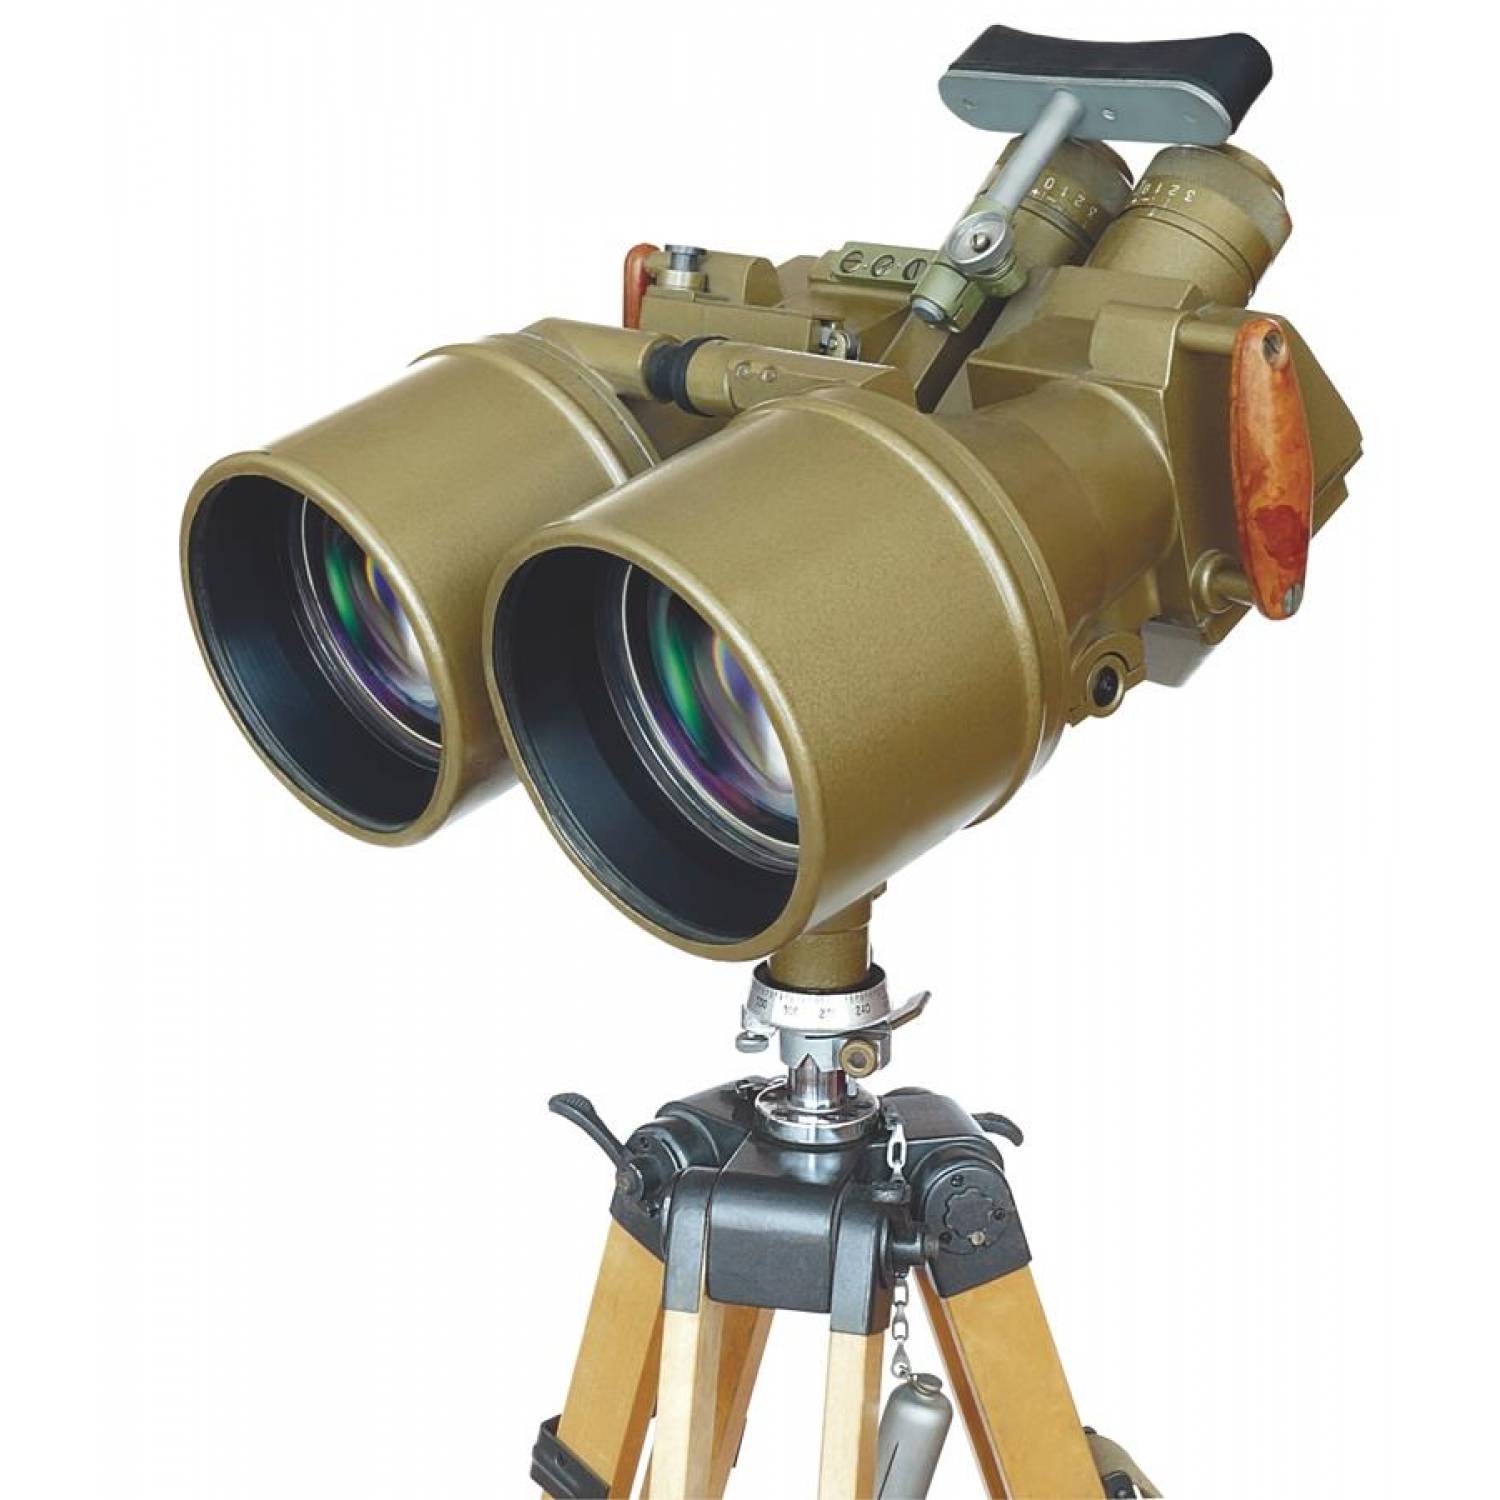 Купить трубу для наблюдения. ПНБ-2 прибор наблюдательный бинокулярный. Бинокль пограничный стационарный ТПБ-2. ТПБ-2 труба Пограничная бинокулярная. ПНБ-1 прибор наблюдательный бинокулярный.